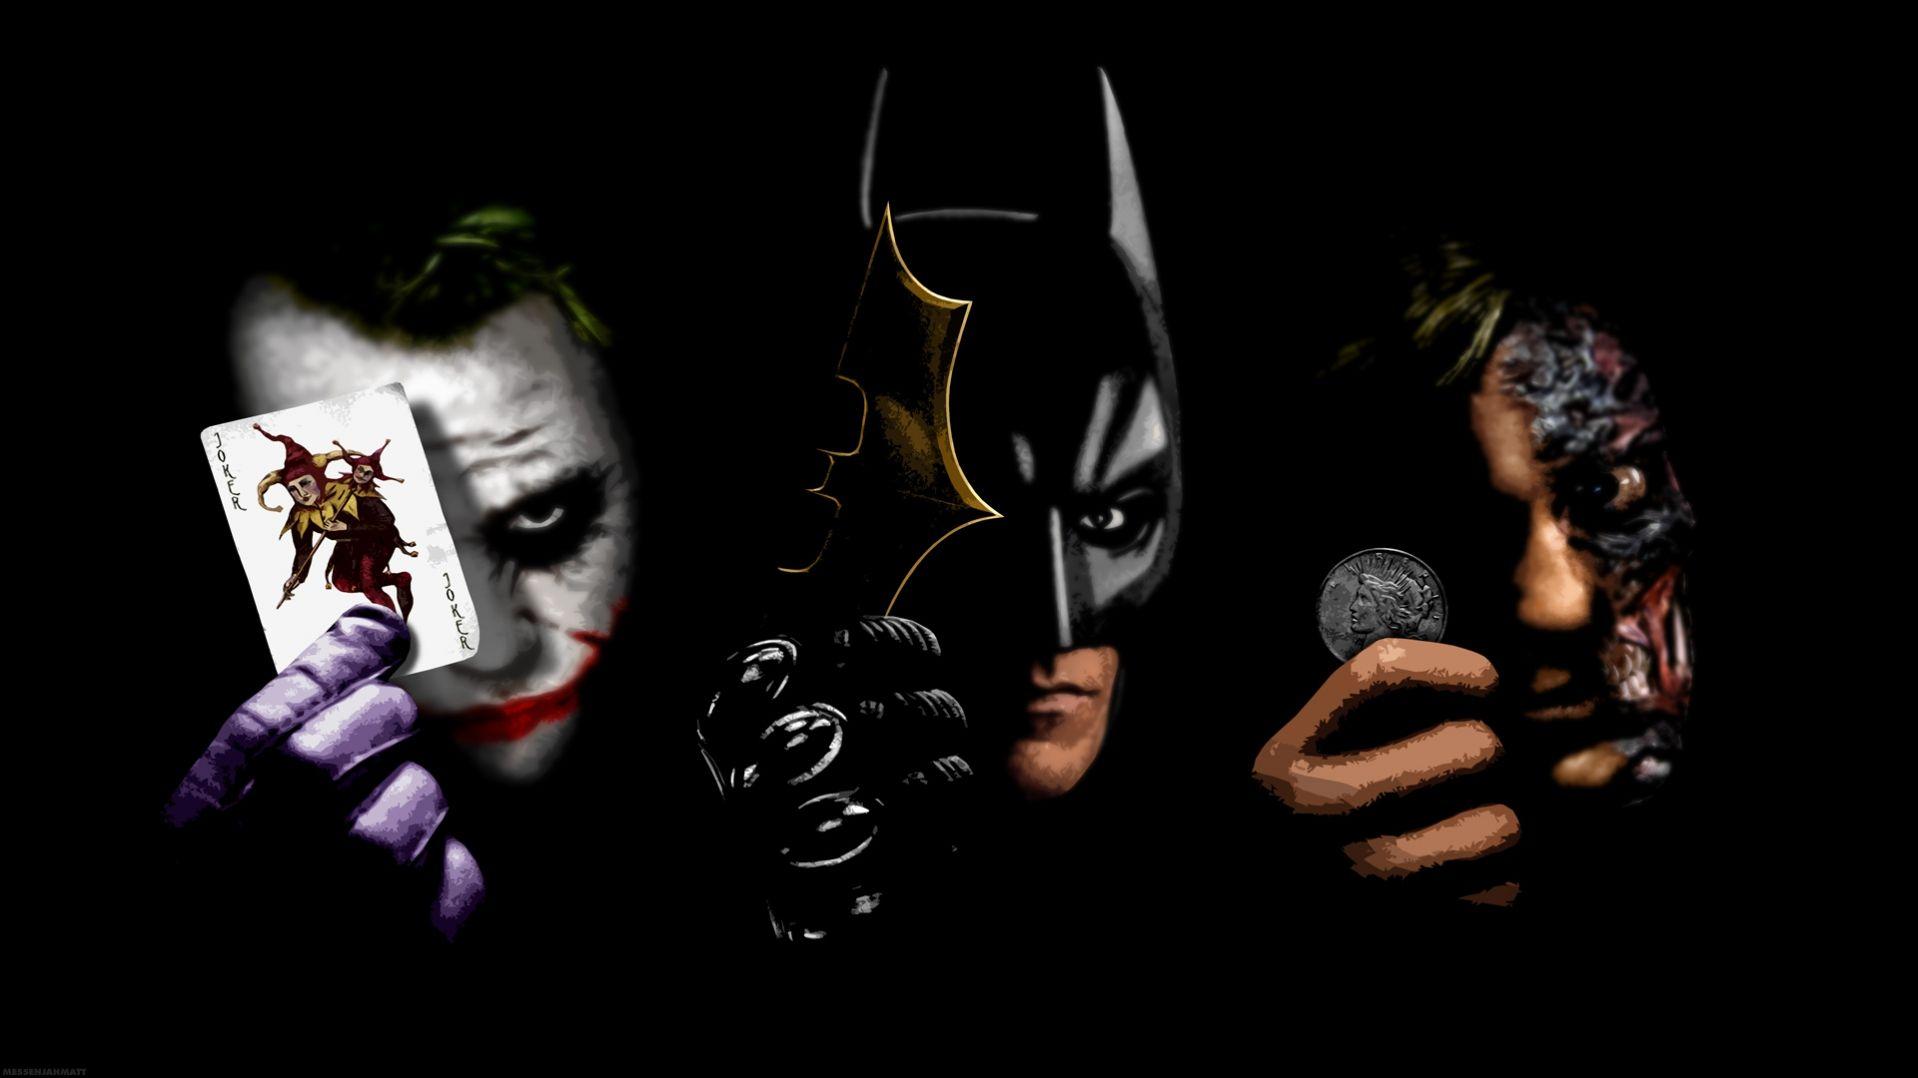 Two face , batman and joker HD Wallpaper. Batman joker wallpaper, Batman wallpaper, Joker HD wallpaper